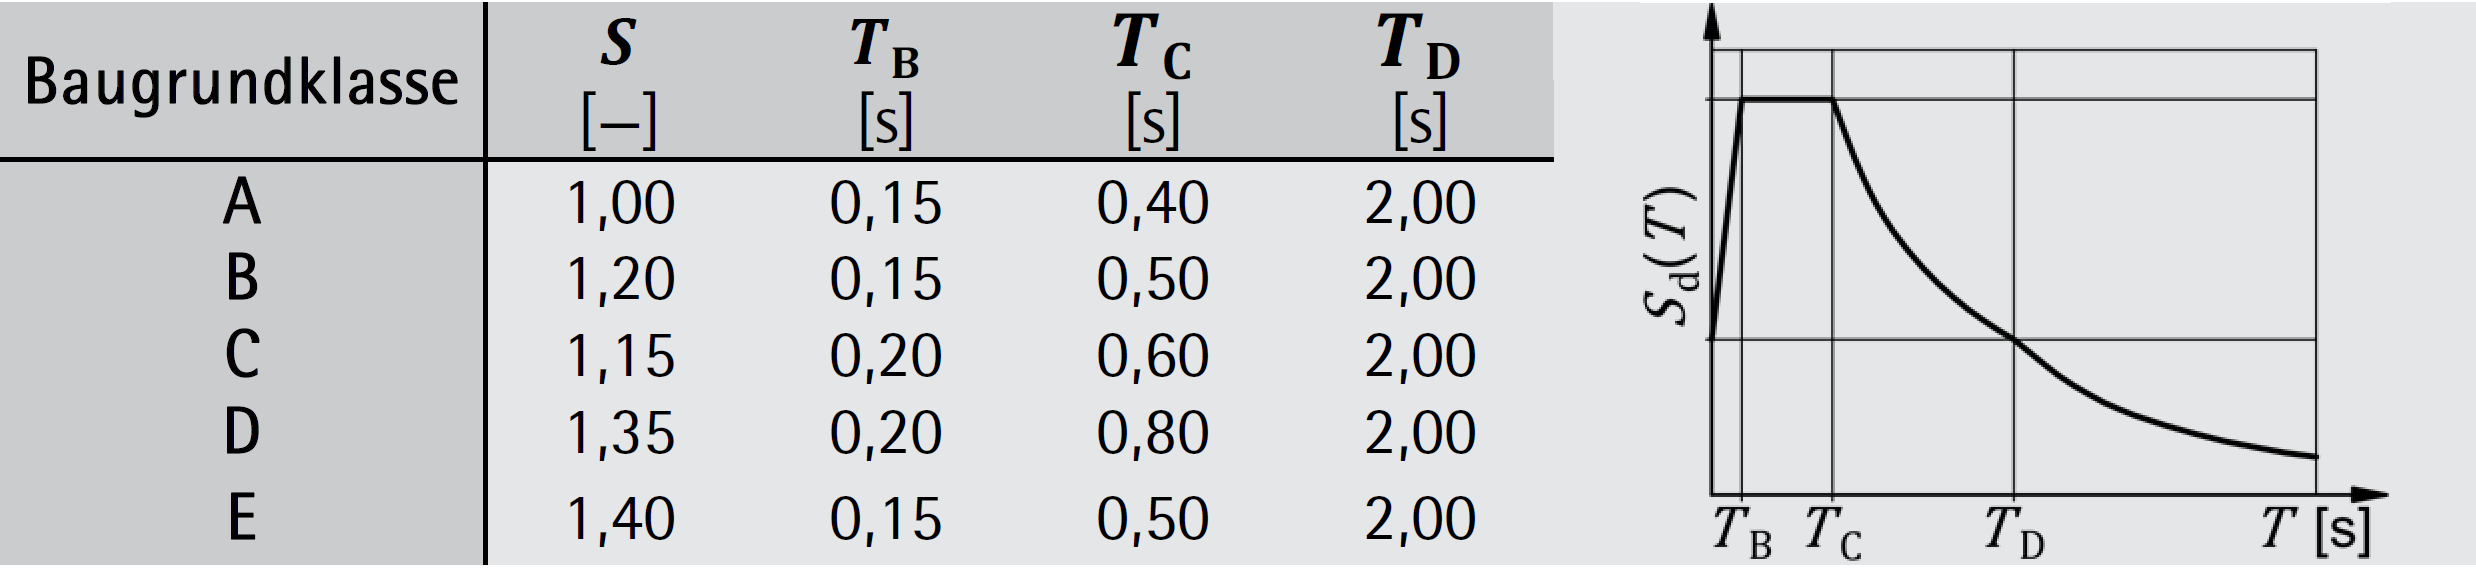 Parameterwerte zur Beschreibung des elastischen Antwortspektrums – ÖNORM EN 1998-1